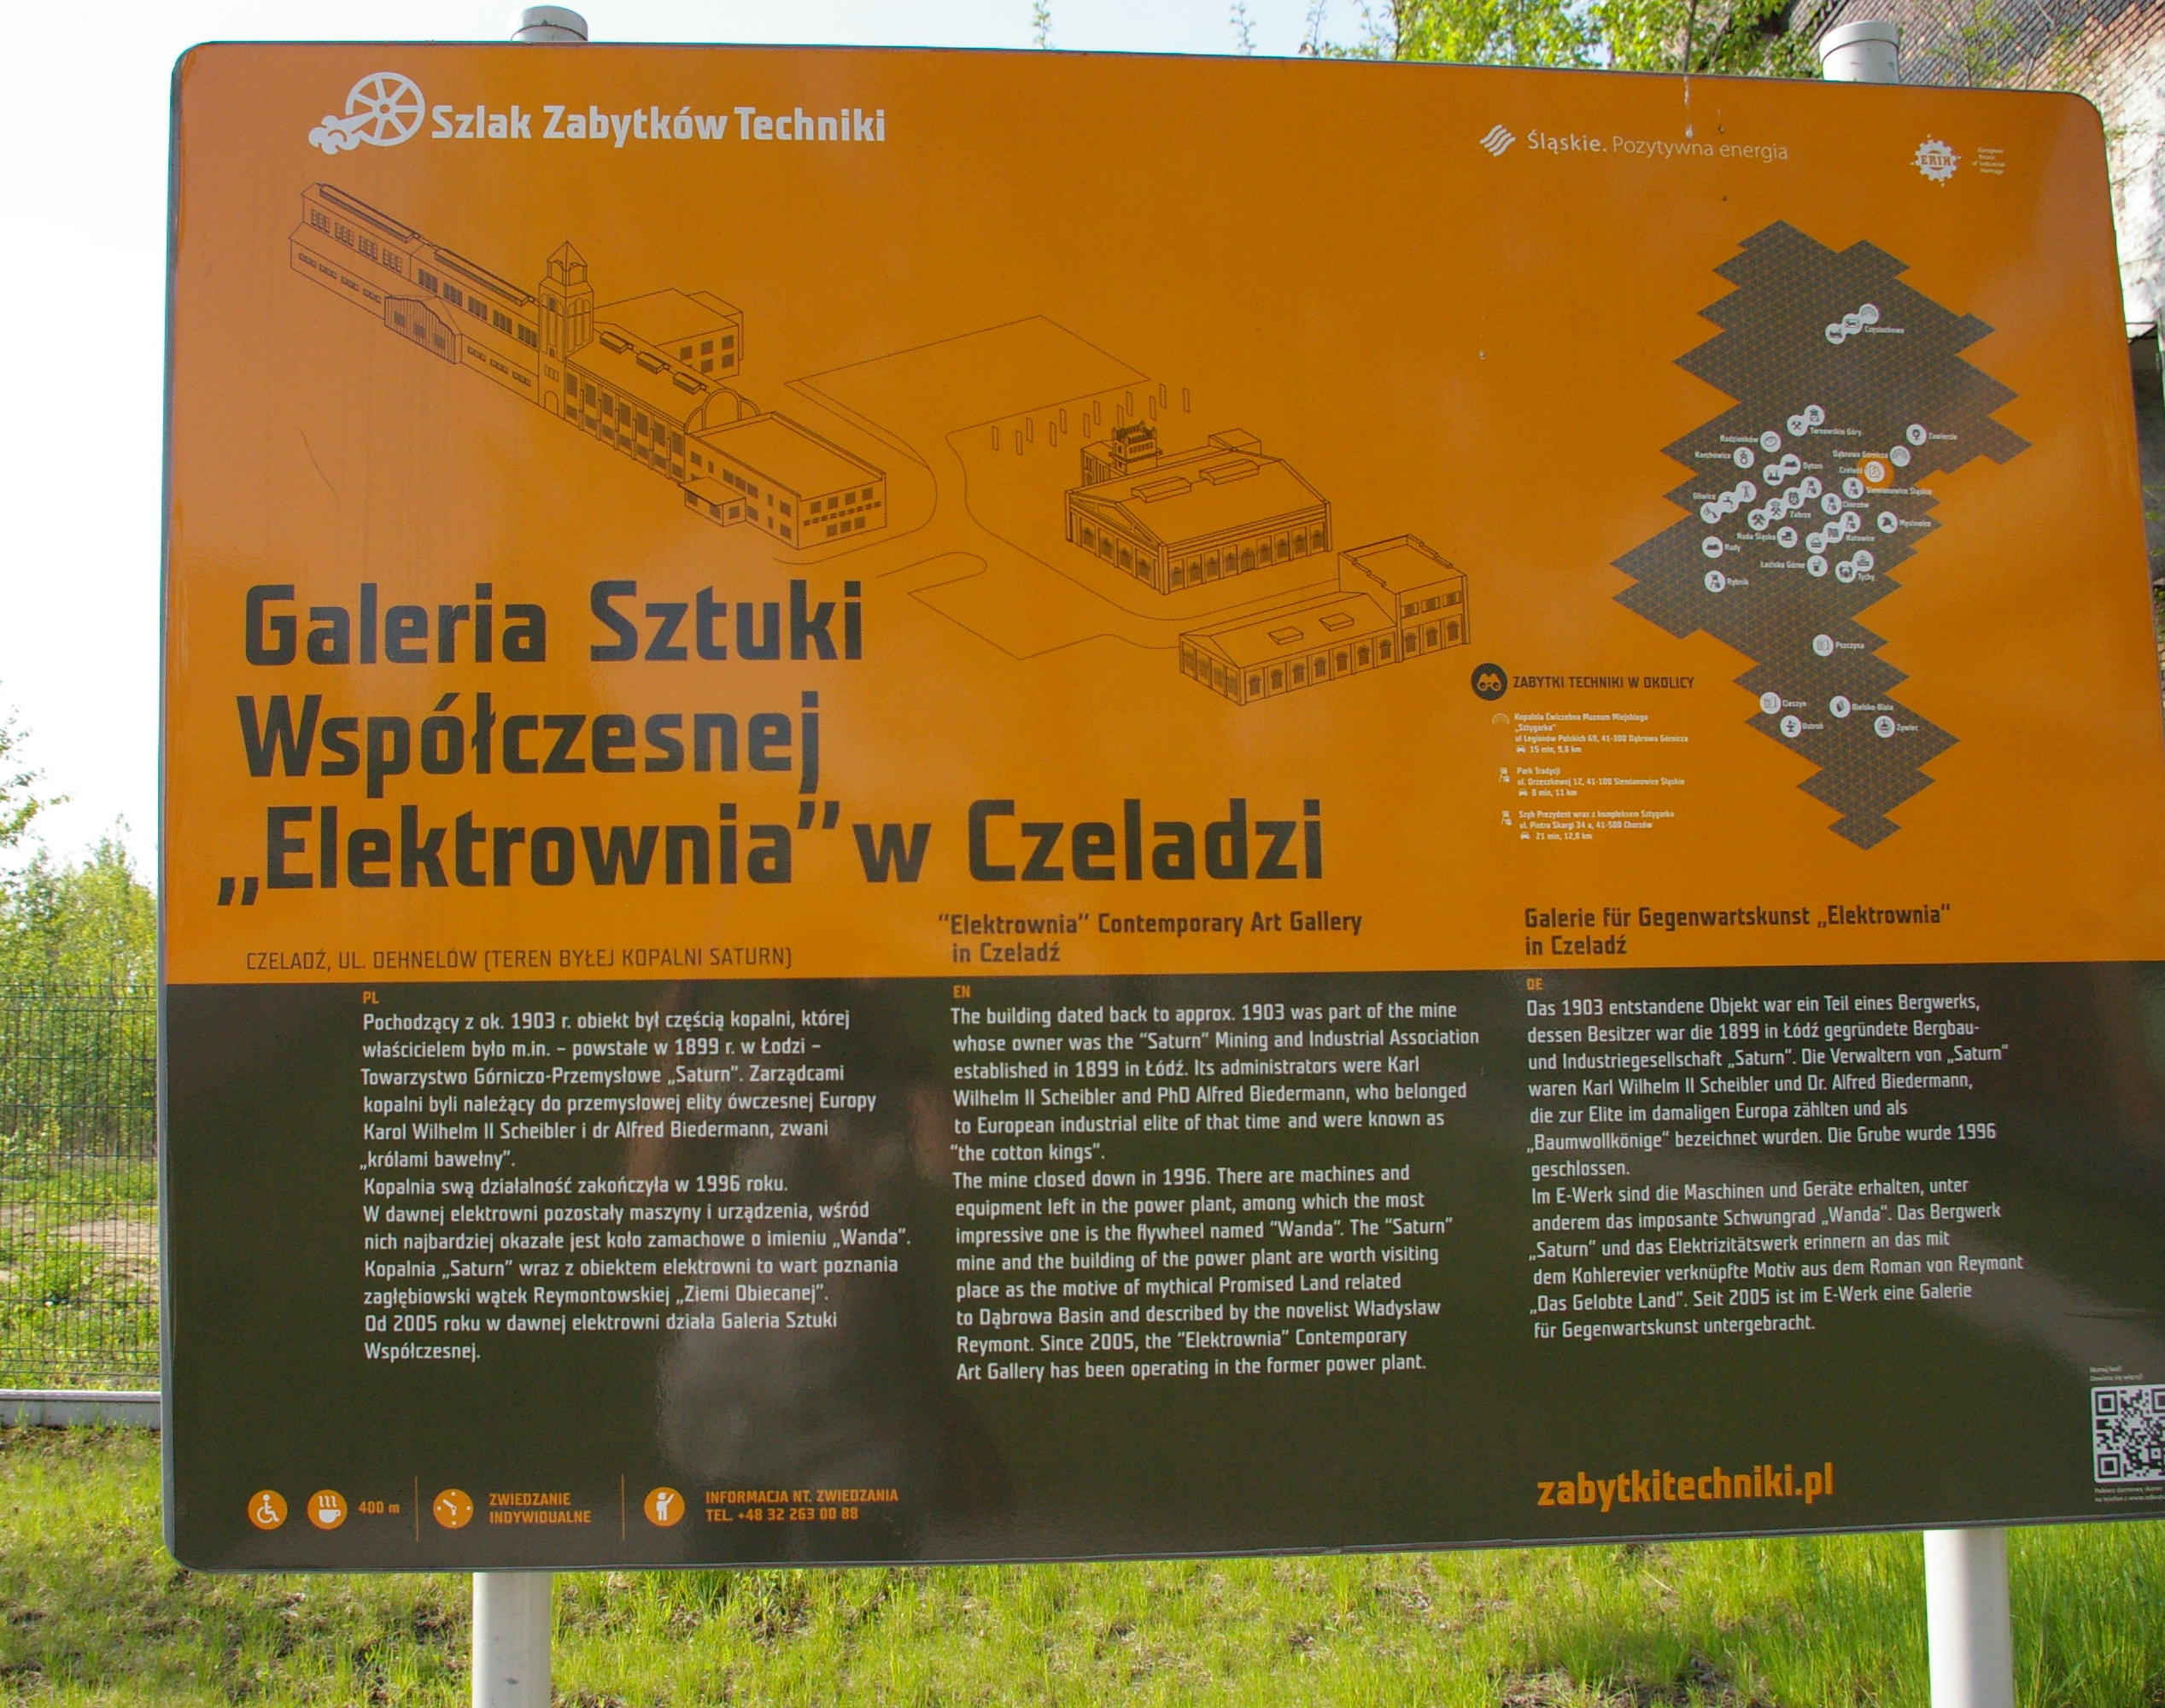 Tablica informacyjna znajdująca sie przy bramie wejściowej na teren Galerii Sztuki Współczesnej ELEKTROWNIA w Czeladzi.